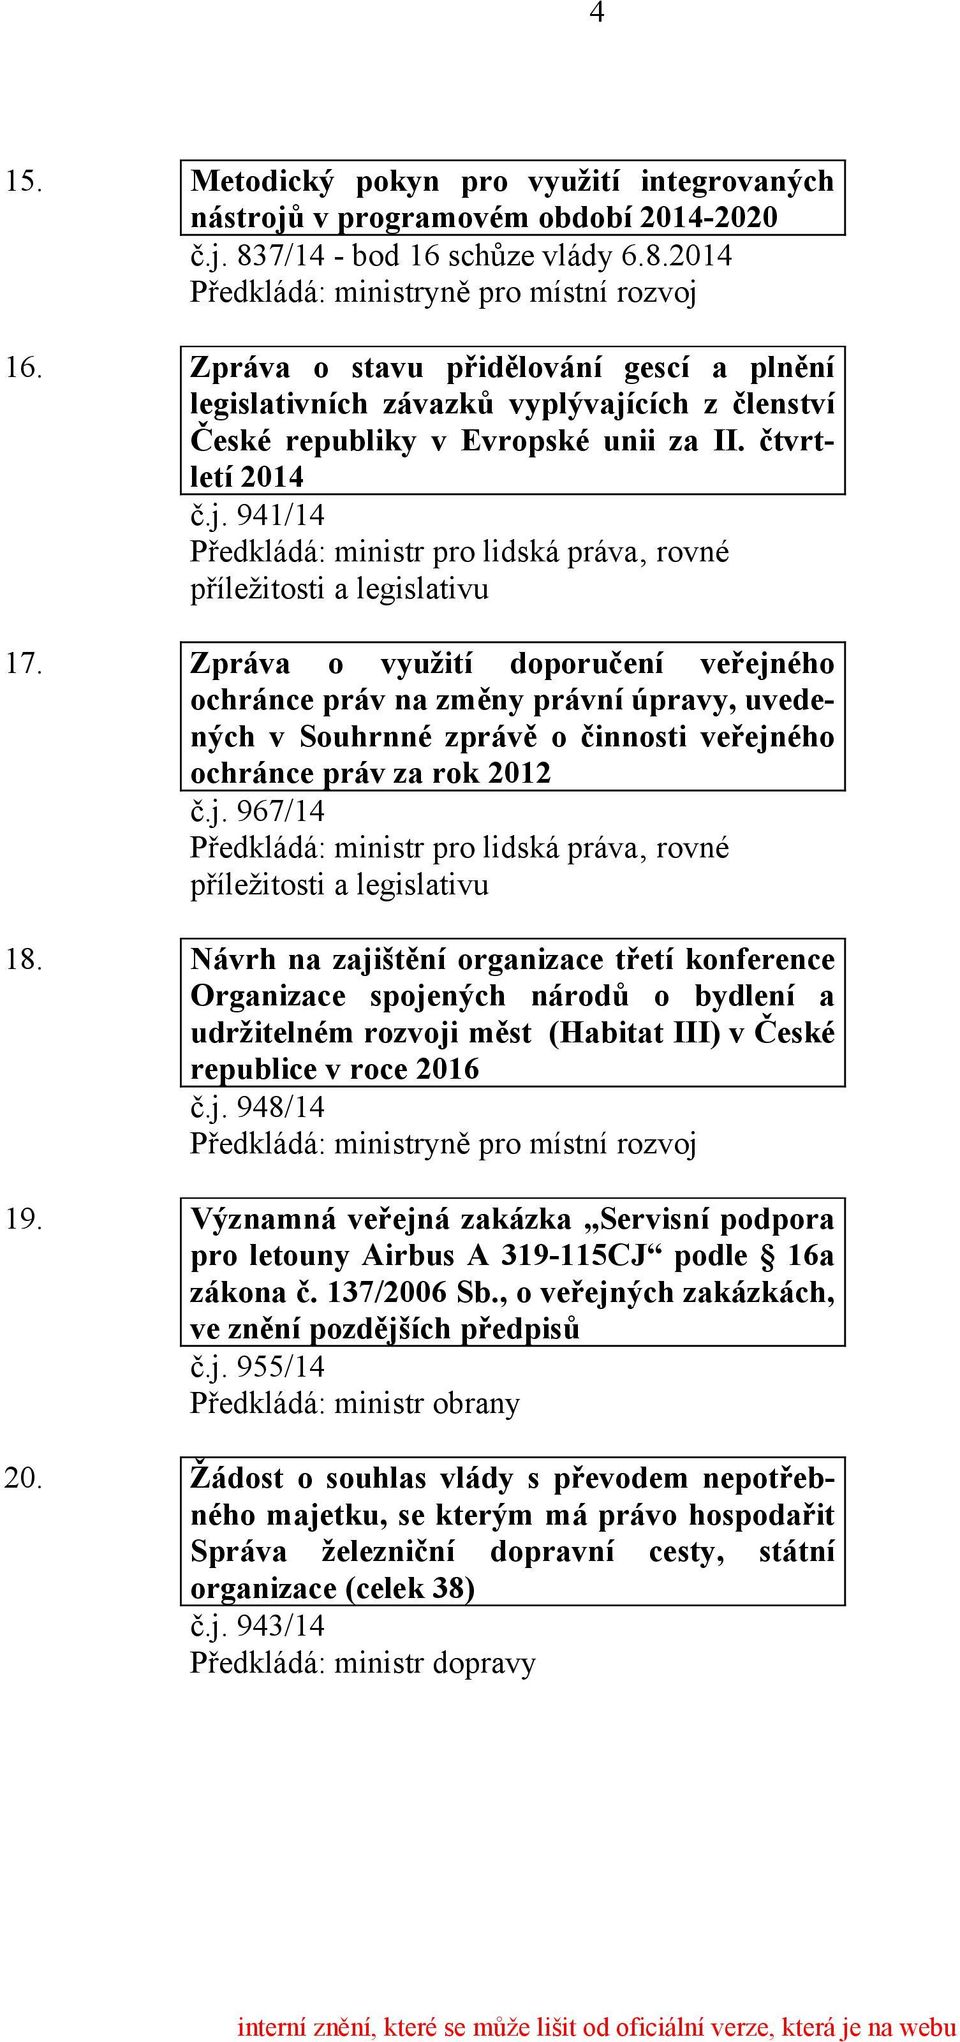 Zpráva o využití doporučení veřejného ochránce práv na změny právní úpravy, uvedených v Souhrnné zprávě o činnosti veřejného ochránce práv za rok 2012 č.j. 967/14 18.